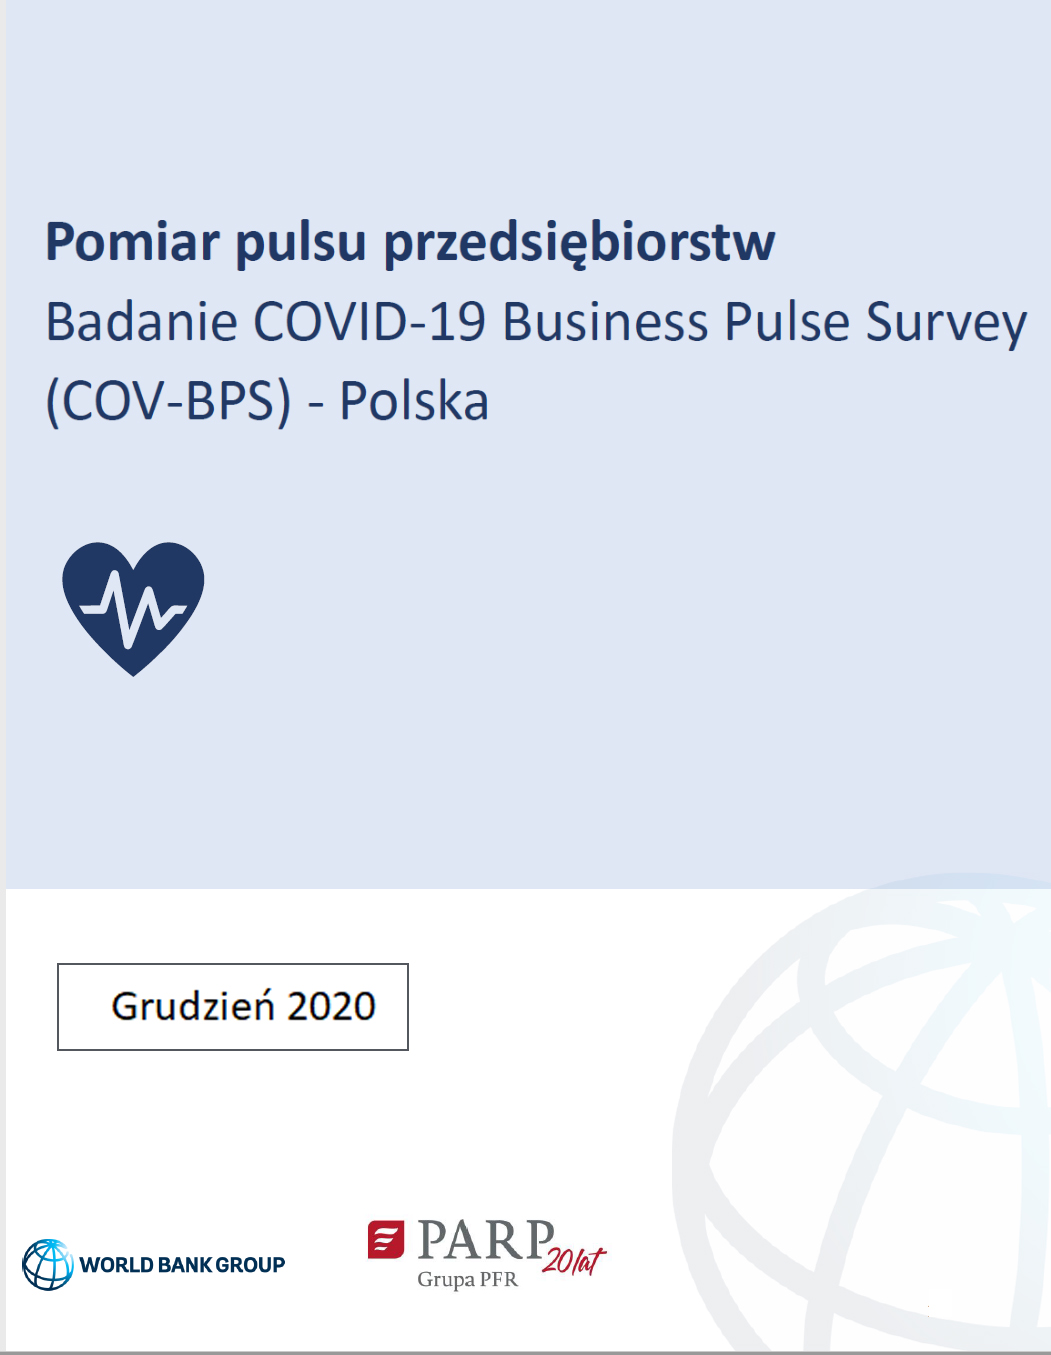 Pomiar pulsu przedsiębiorstw – druga edycja. Badanie COVID-19 Business Pulse Survey (COV-BPS) - Polska